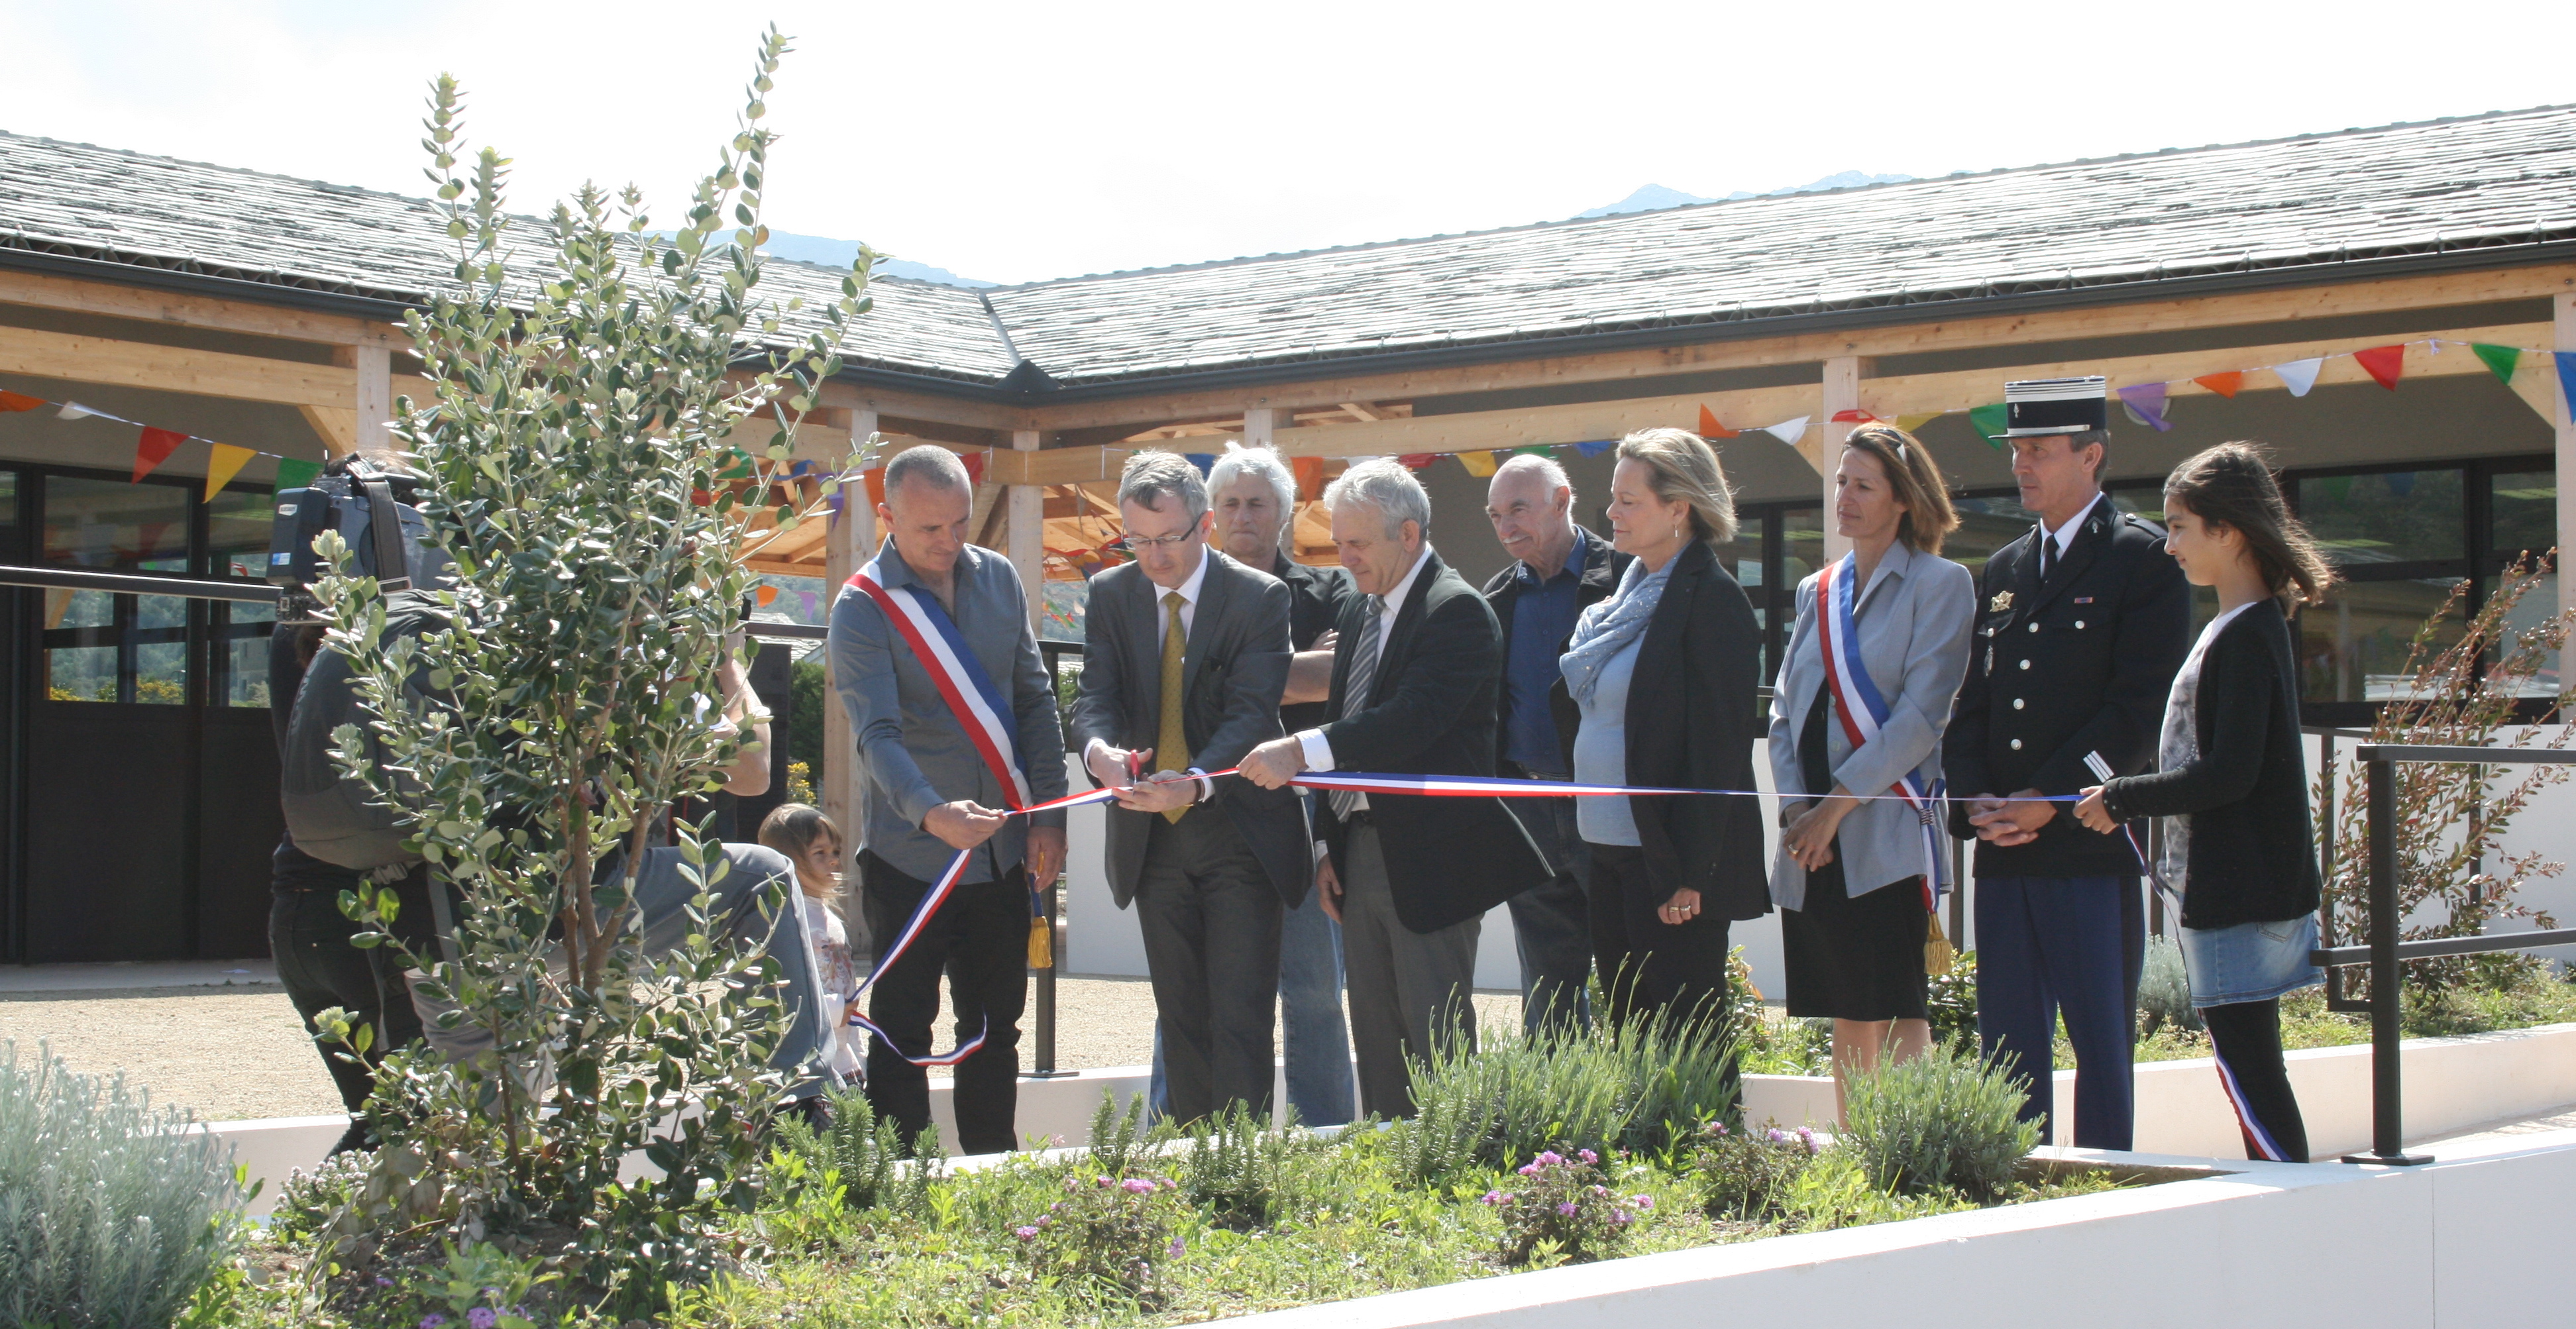 Inauguration des nouveaux bâtiments scolaires à Centuri en présence du maire David Brugioni et des représentants du Conseil départemental et de la sous-préfecture, en avril 2015.